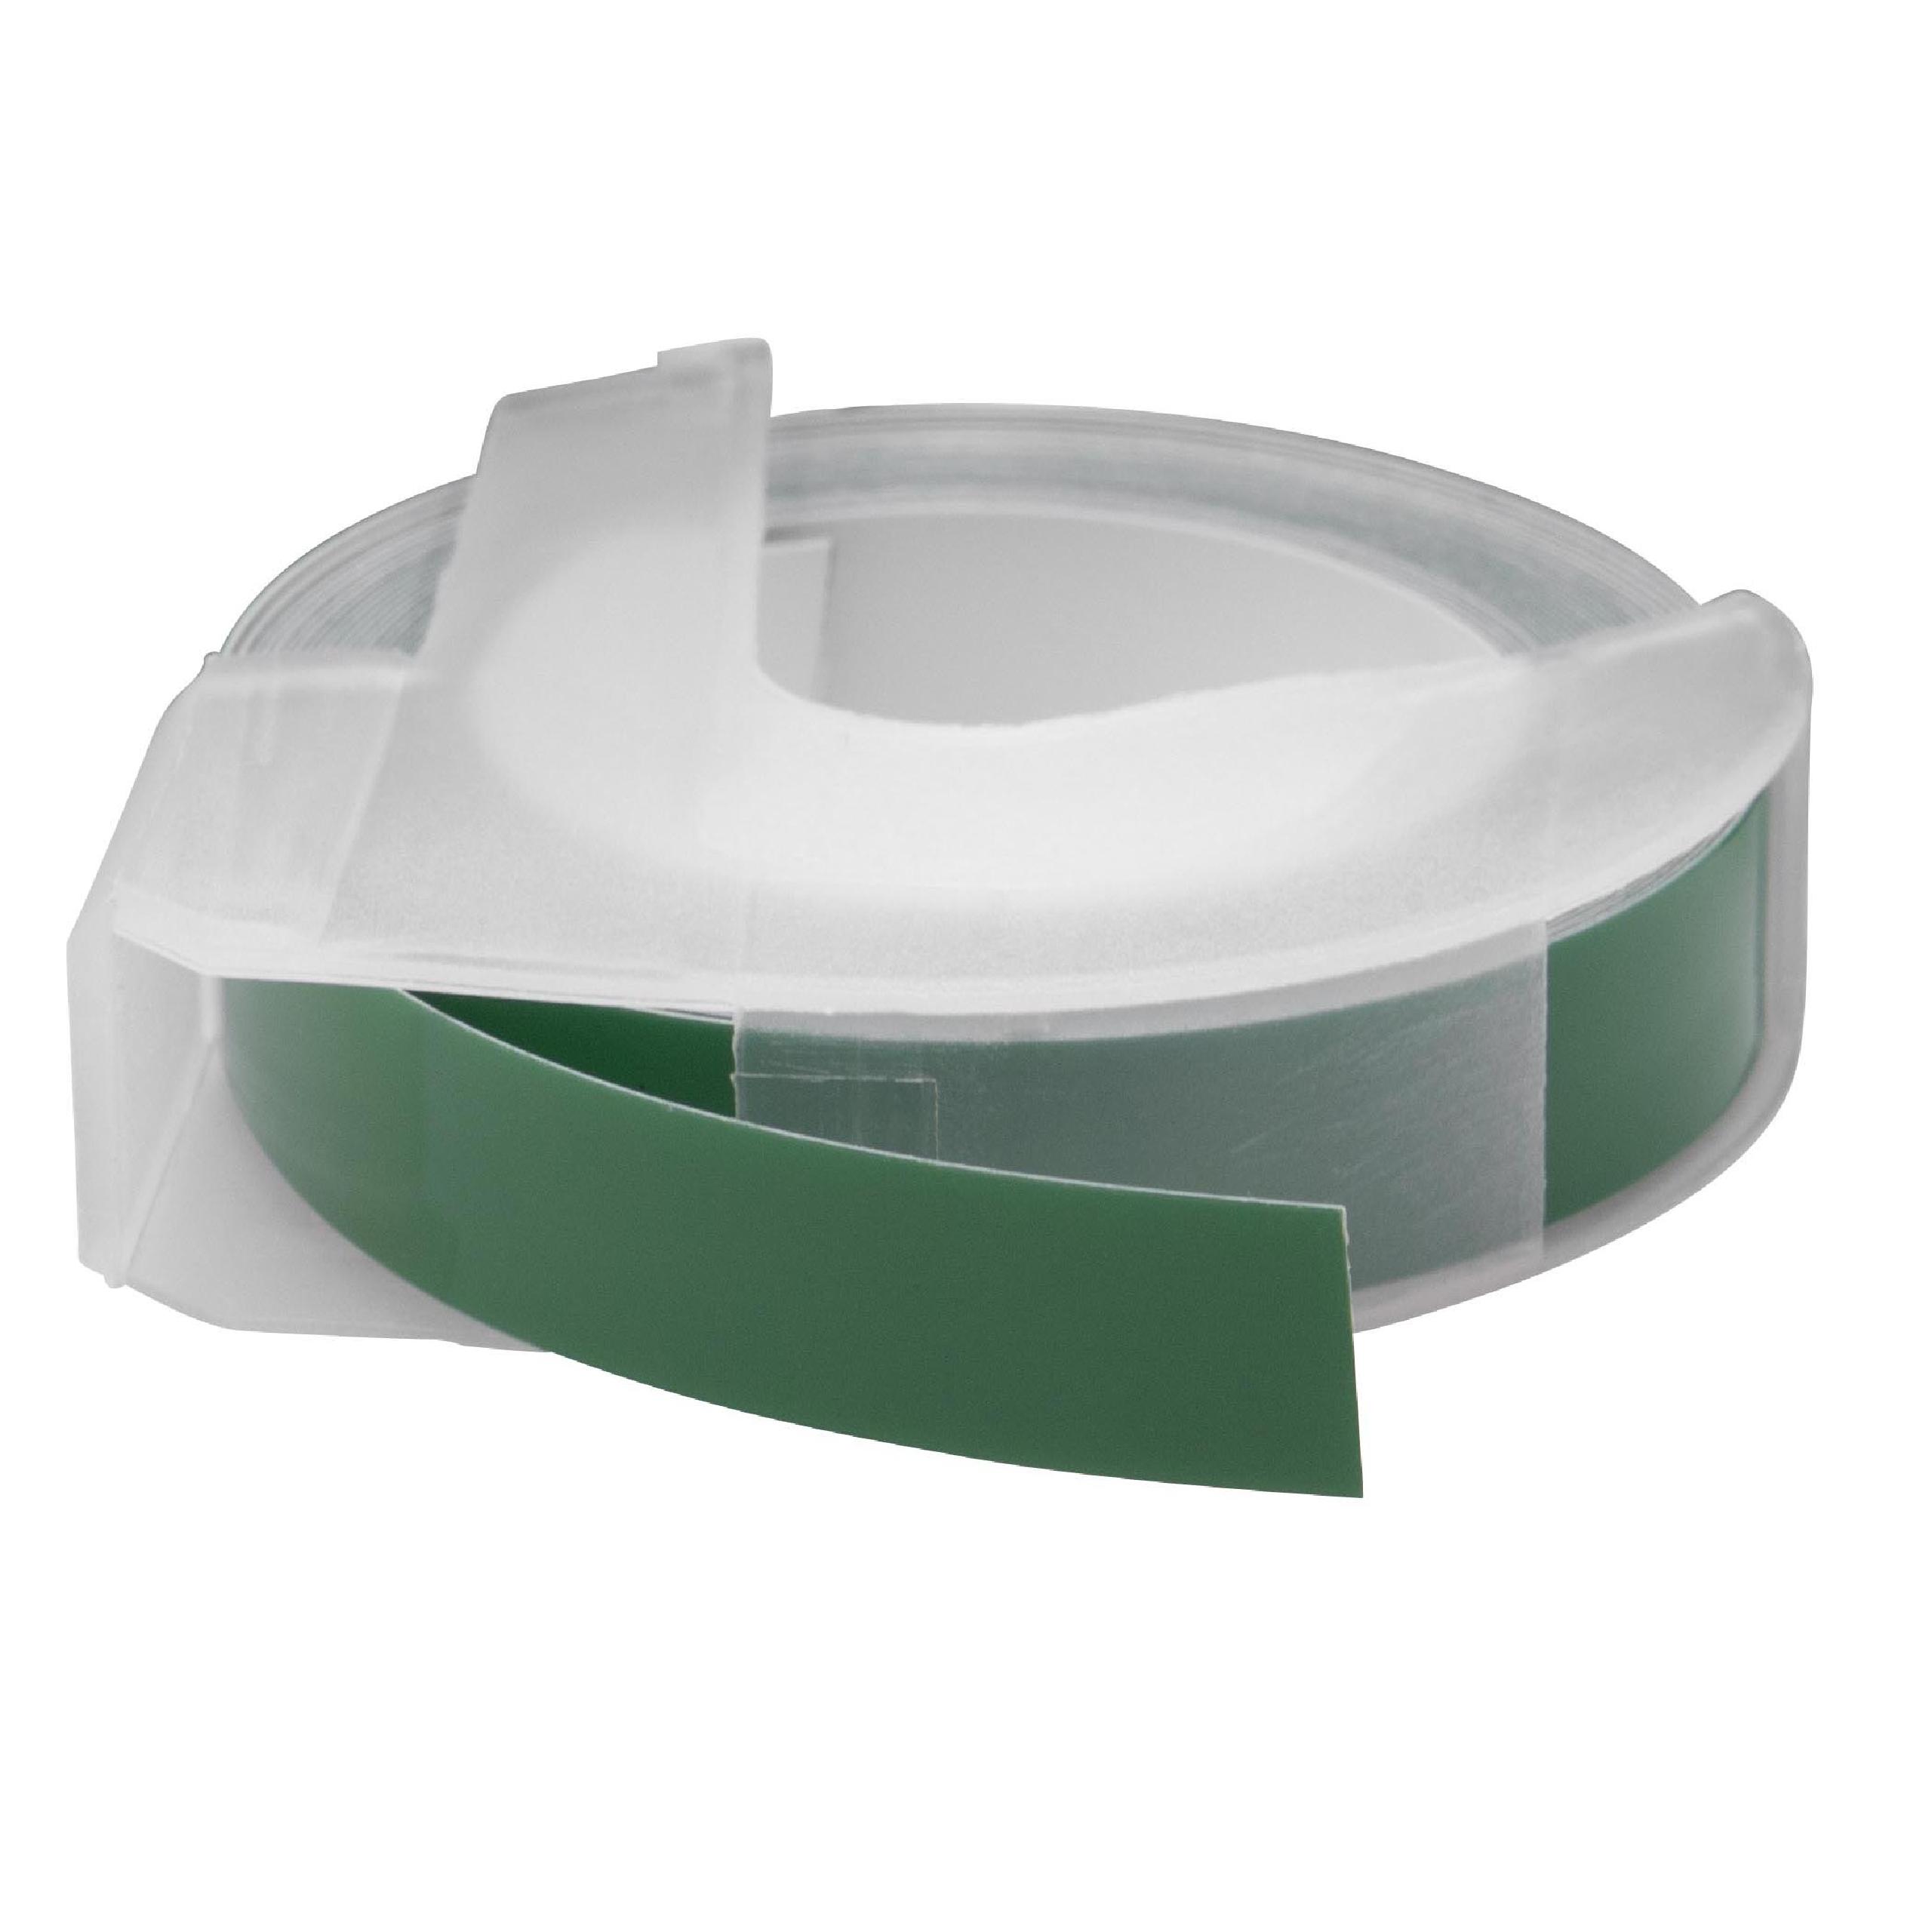 Casete cinta relieve 3D Casete cinta escritura reemplaza Dymo 520105, S0898160 Blanco su Verde